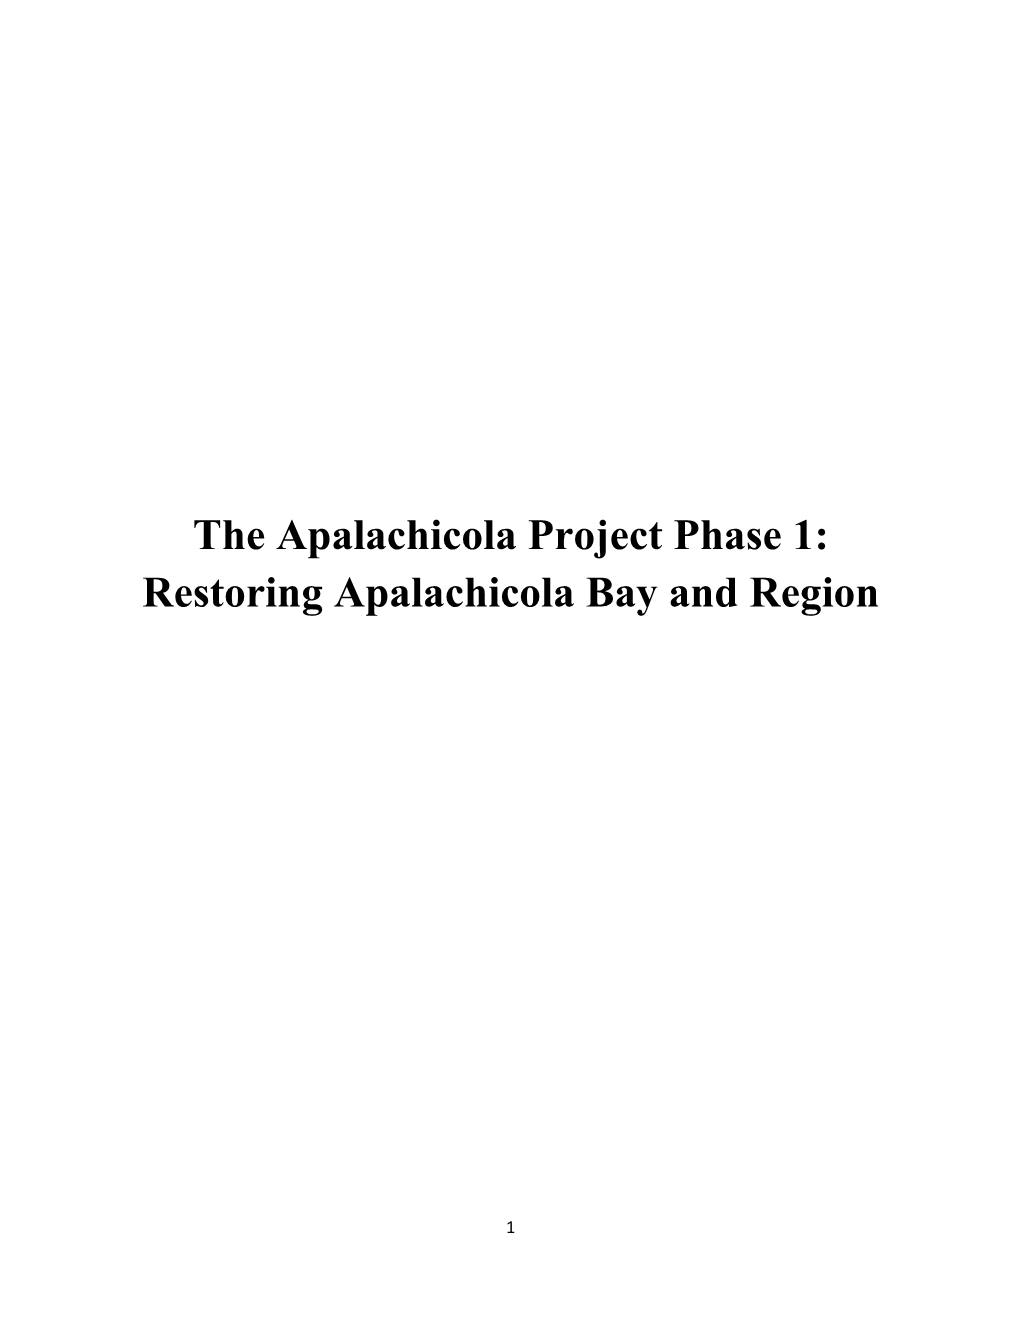 Restoring Apalachicola Bay and Region